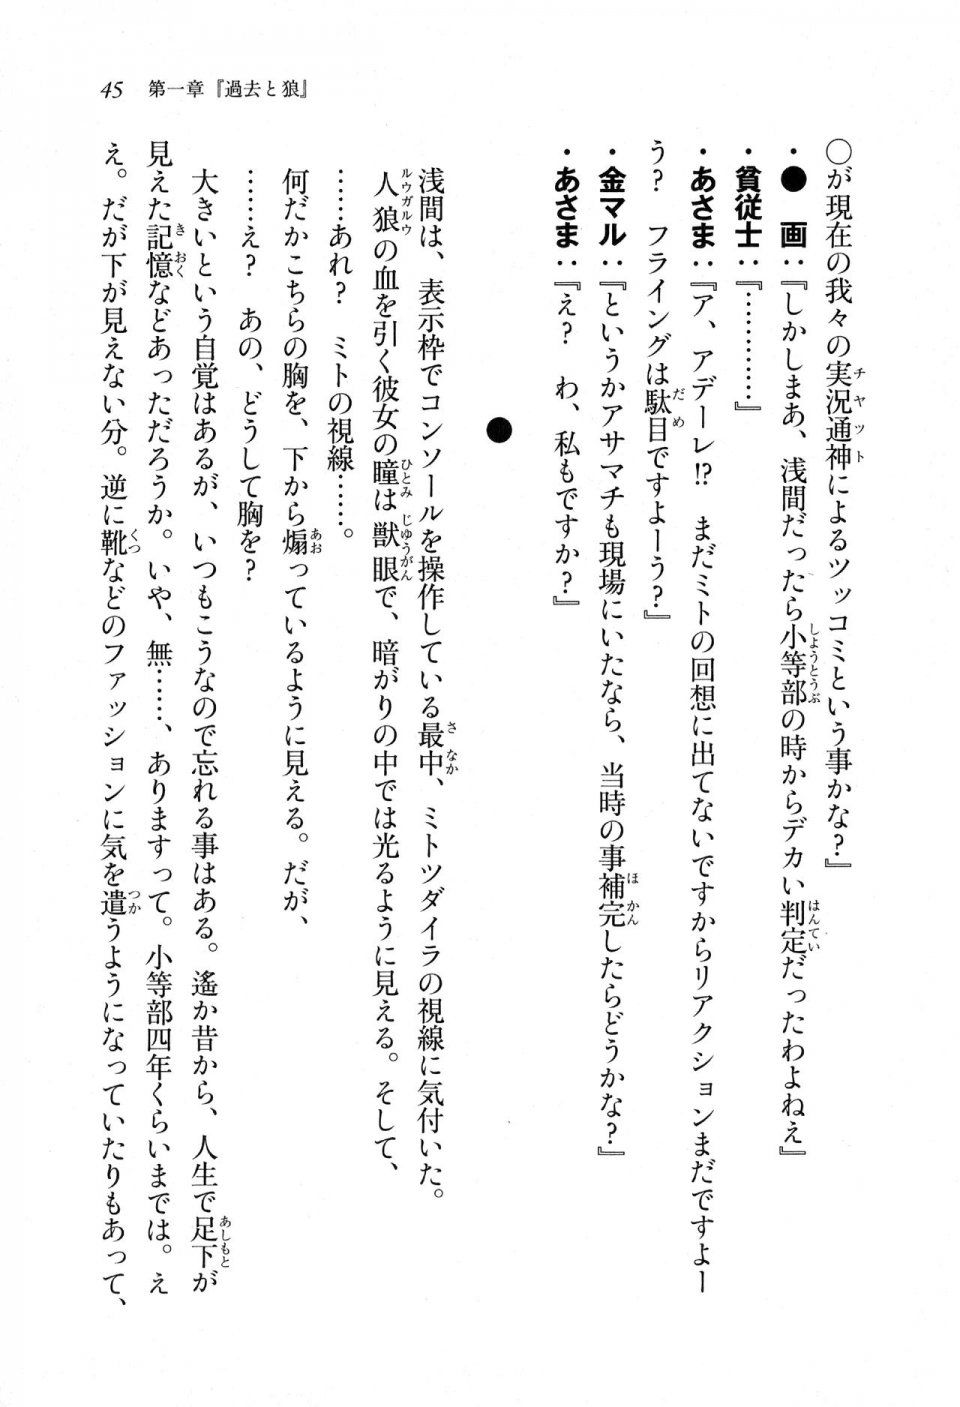 Kyoukai Senjou no Horizon LN Sidestory Vol 1 - Photo #43